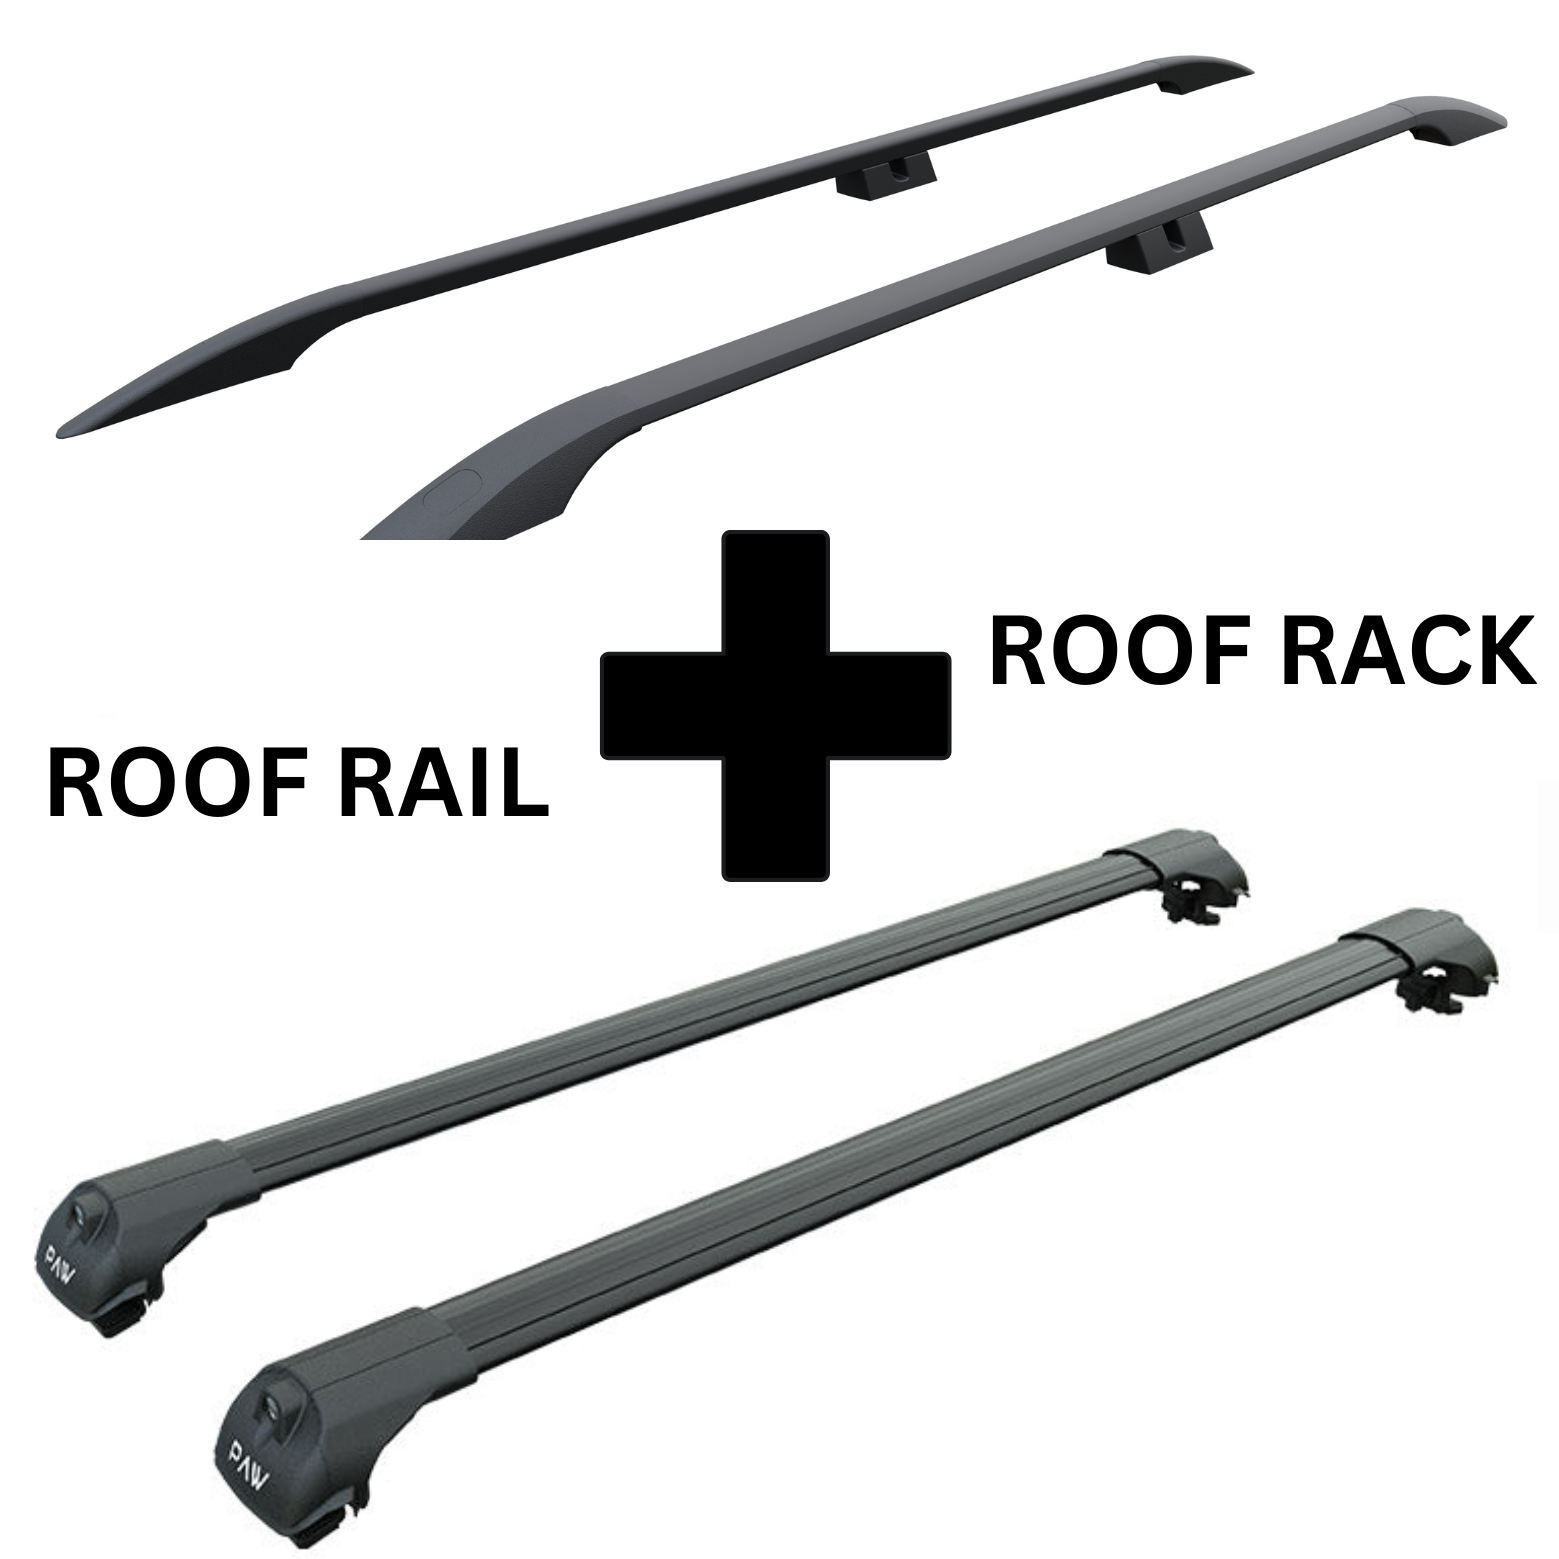 For Volkswagen Transporter T5 SWB Roof Rails and Roof Rack Cross Bar Alu Black 2003-15